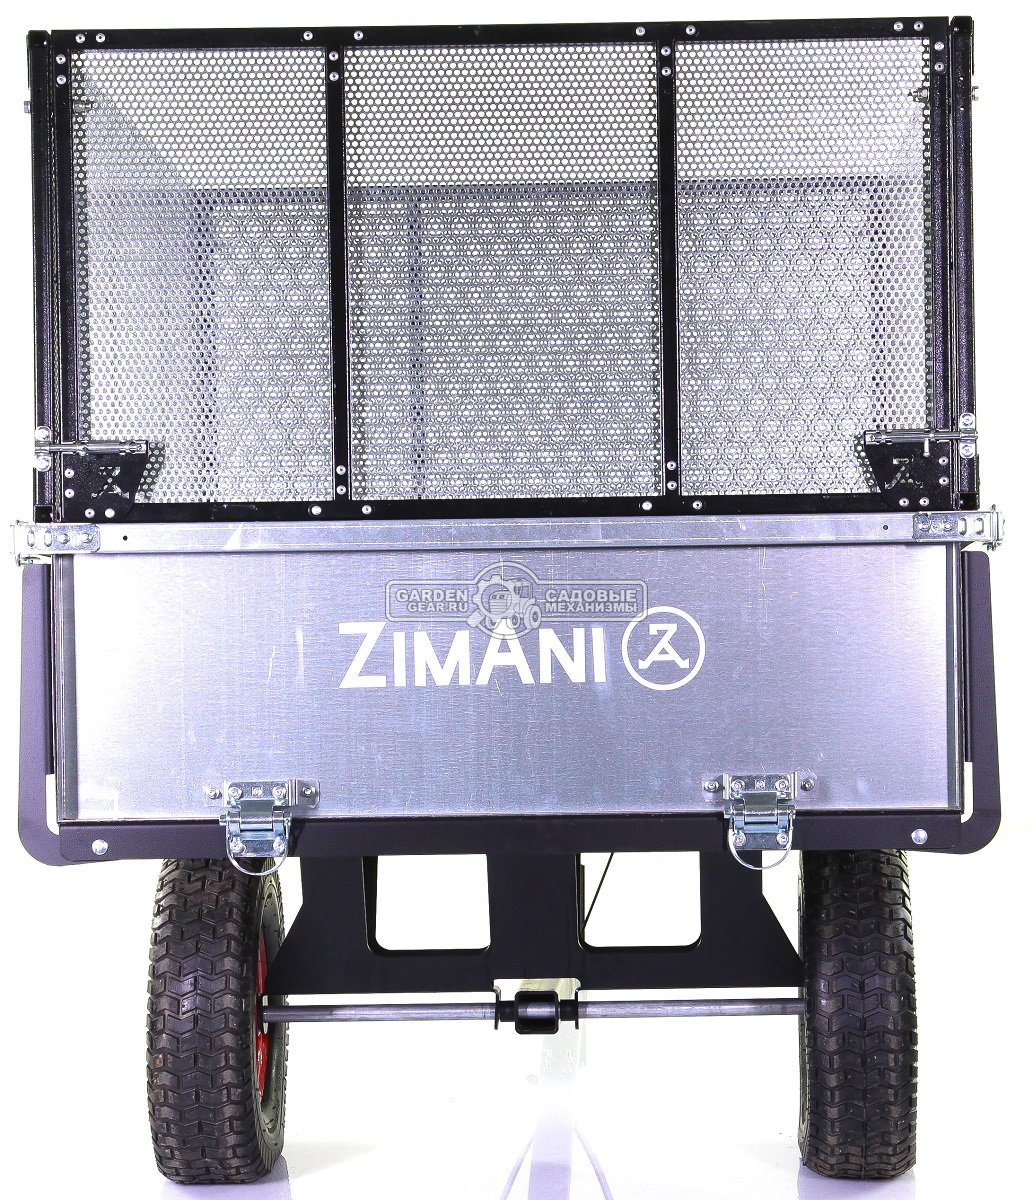 Тележка - прицеп ZimAni Stainless steel 500S с бортами для садовых тракторов, с механизмом опрокидывания (оцинкованной сталь, 500 кг)